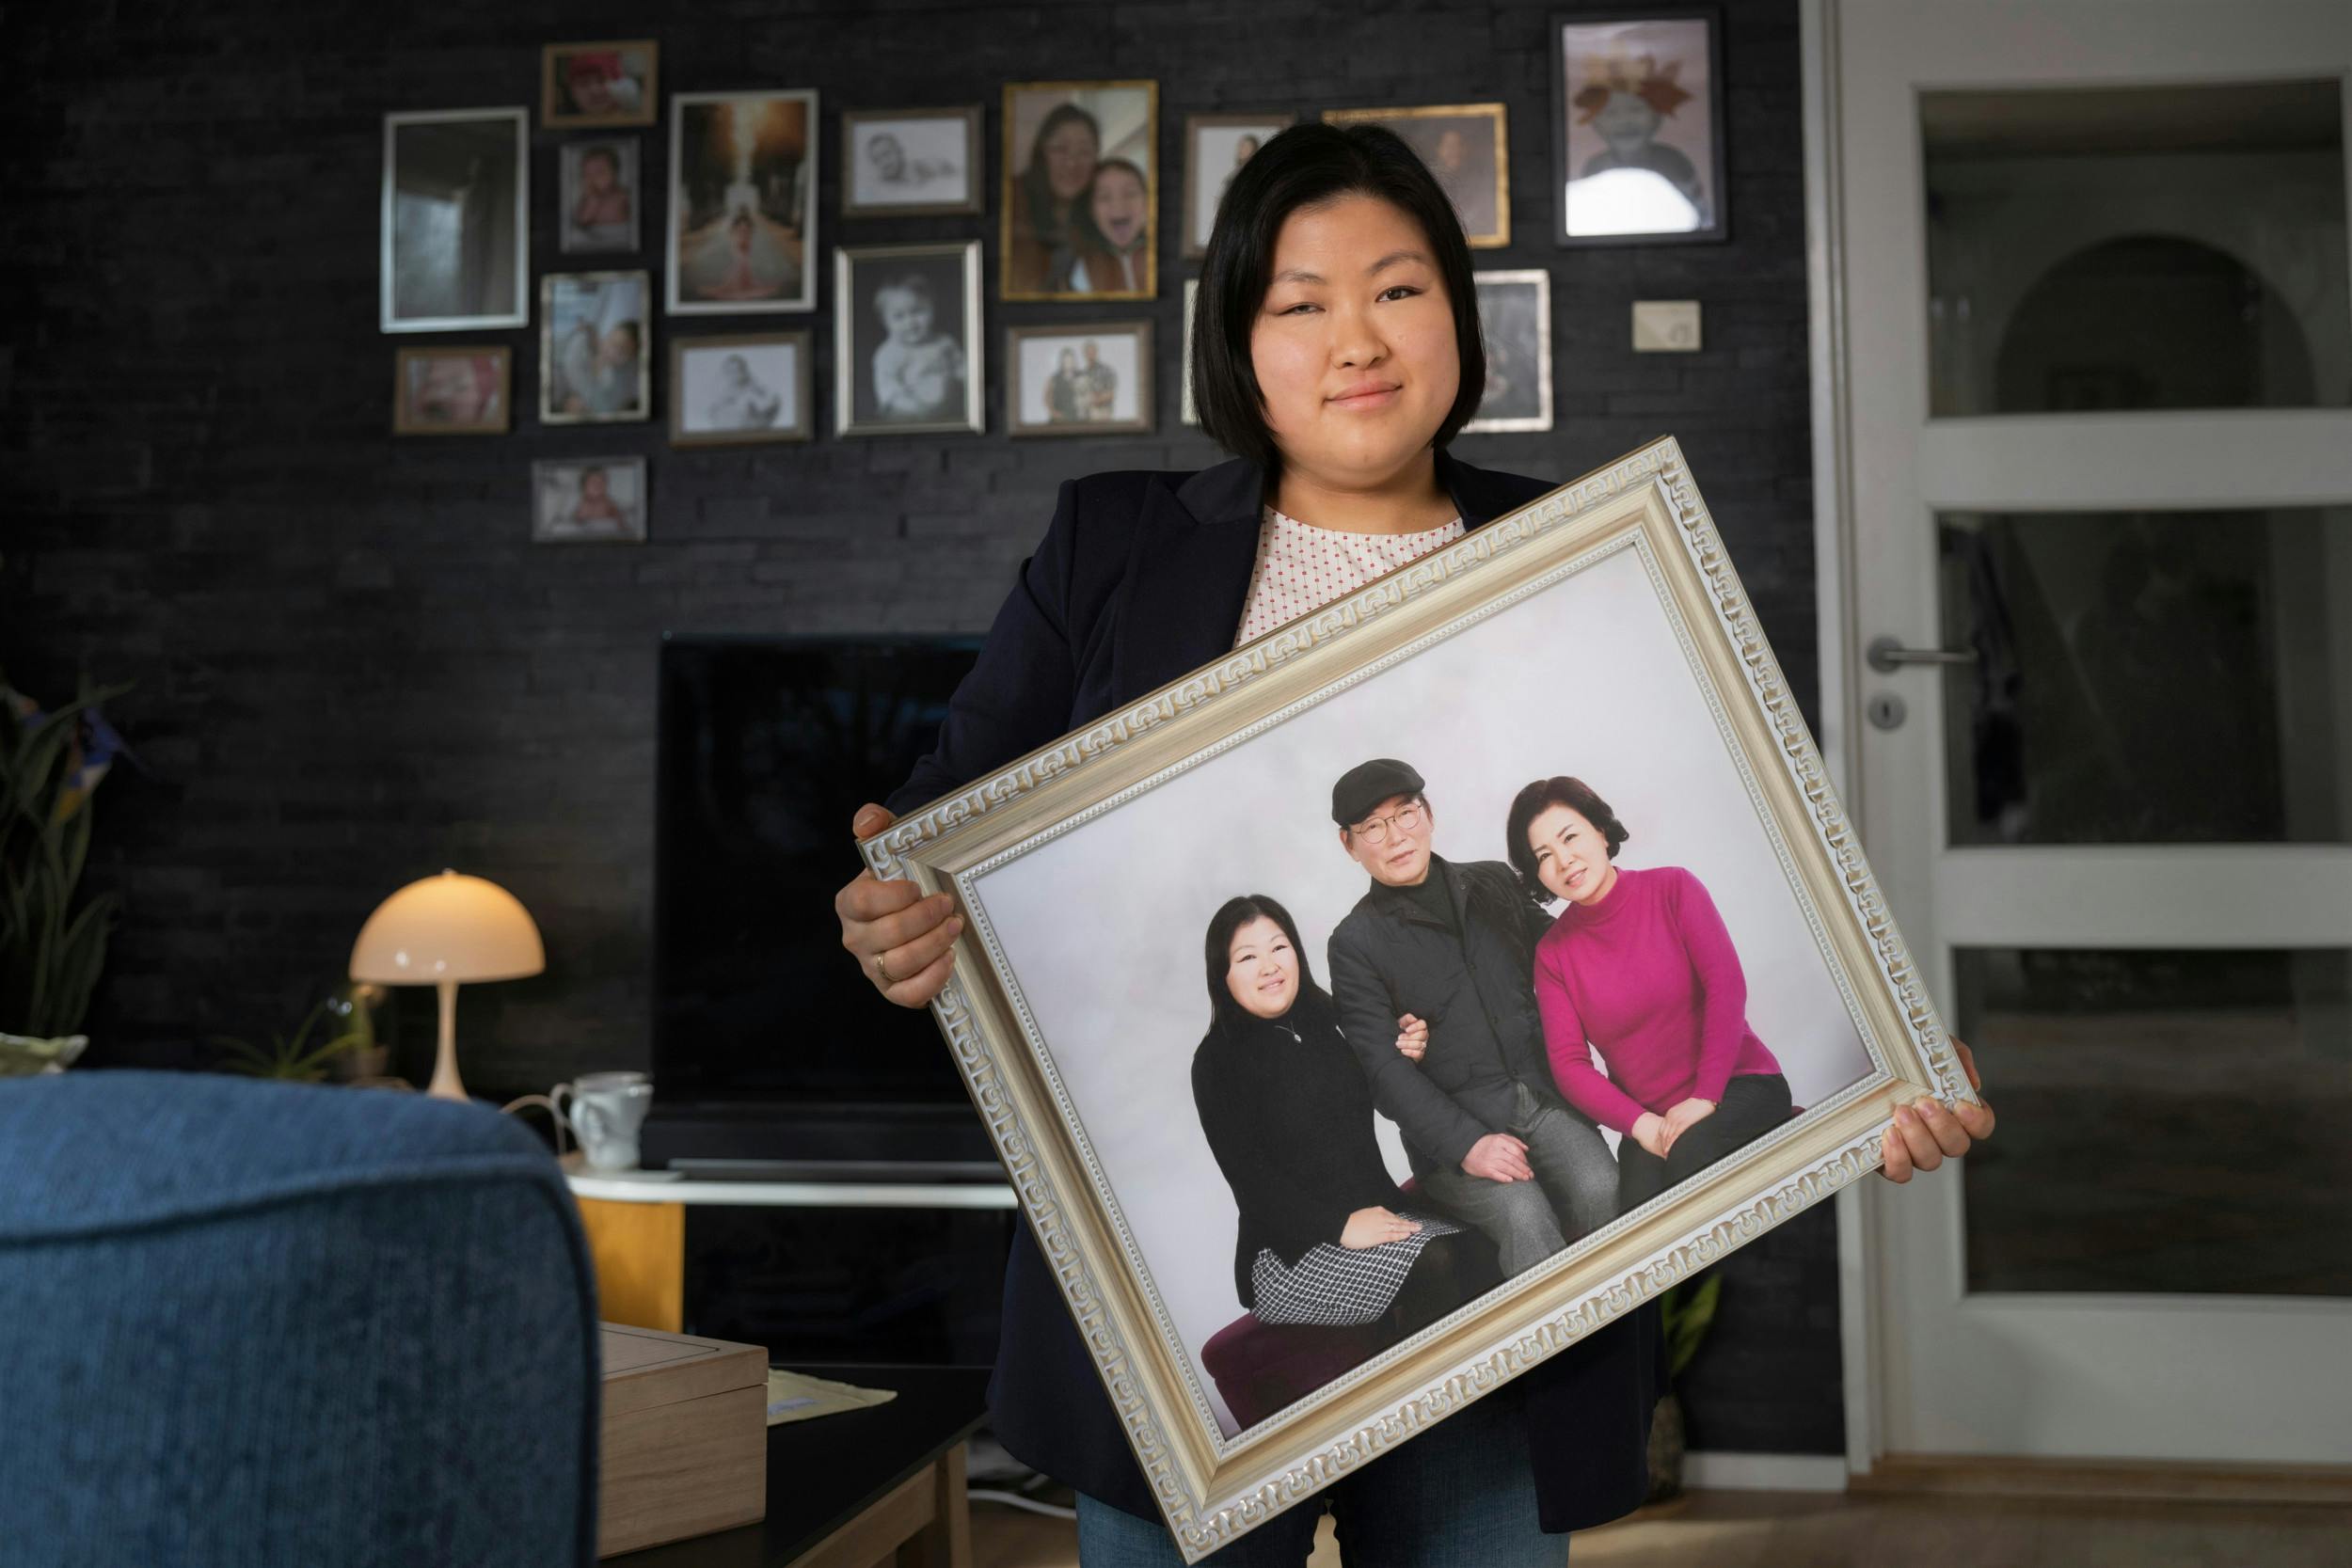 Mia Lee fik taget et billede sammen med sine biologiske forældre, Lee Chang og Jeong Chae, da hun mødte dem for første gang i sit liv sidste år i december.